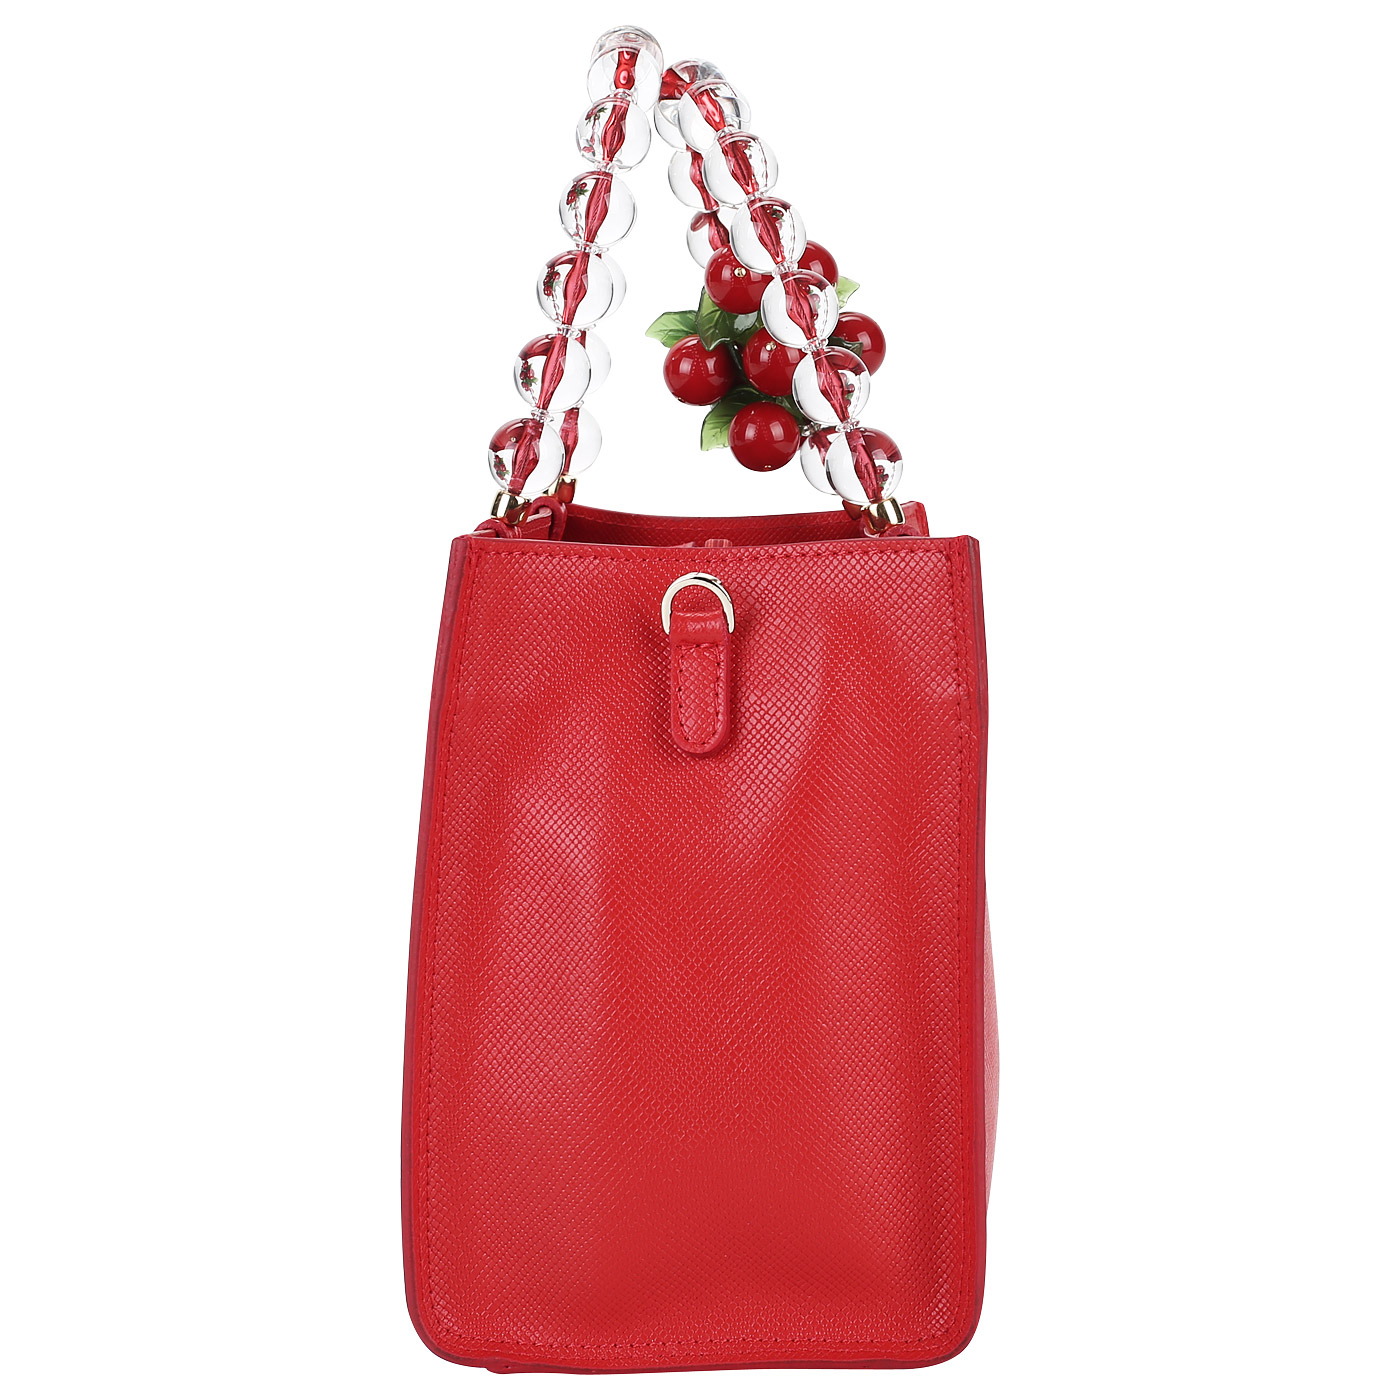 Красная женская сумочка из кожи Roberta Gandolfi Cappuccetto rosso